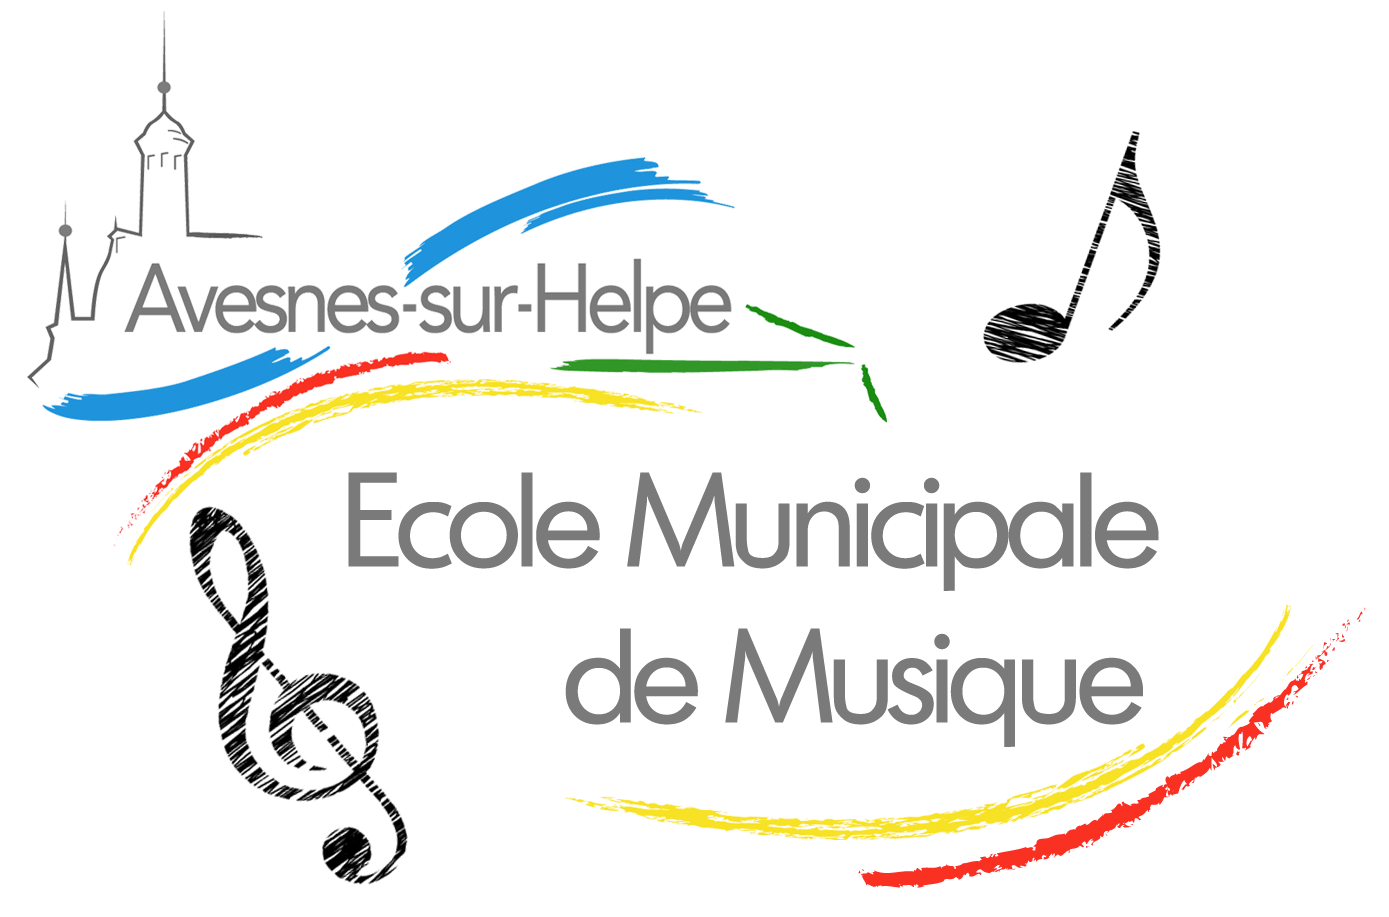 Ecole Municipale de Musique d'Avesnes-sur-Helpe